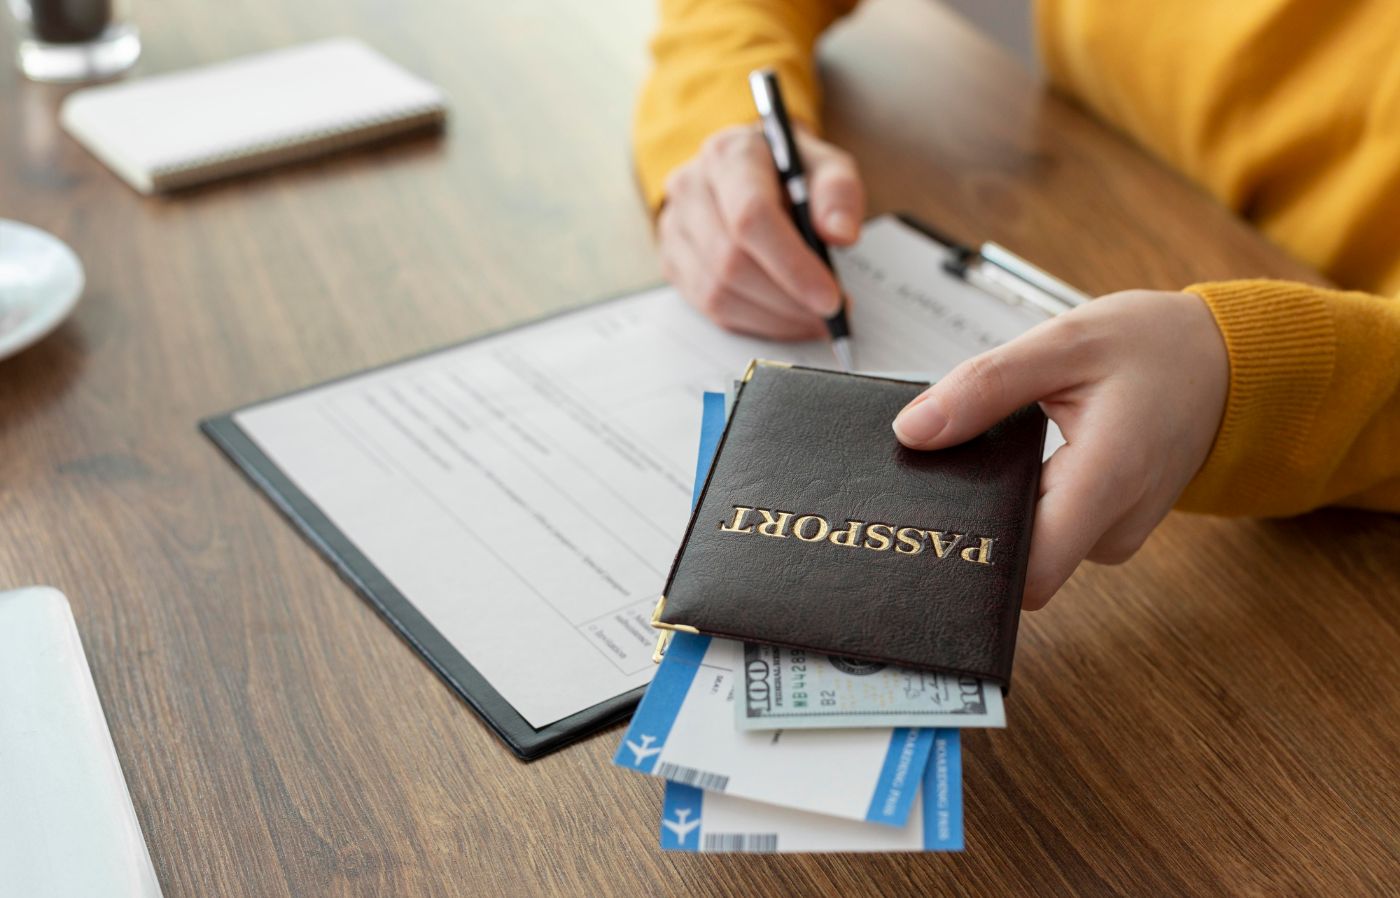 Pessoa segurando passaporte com visto americano e preenchendo um formulário.